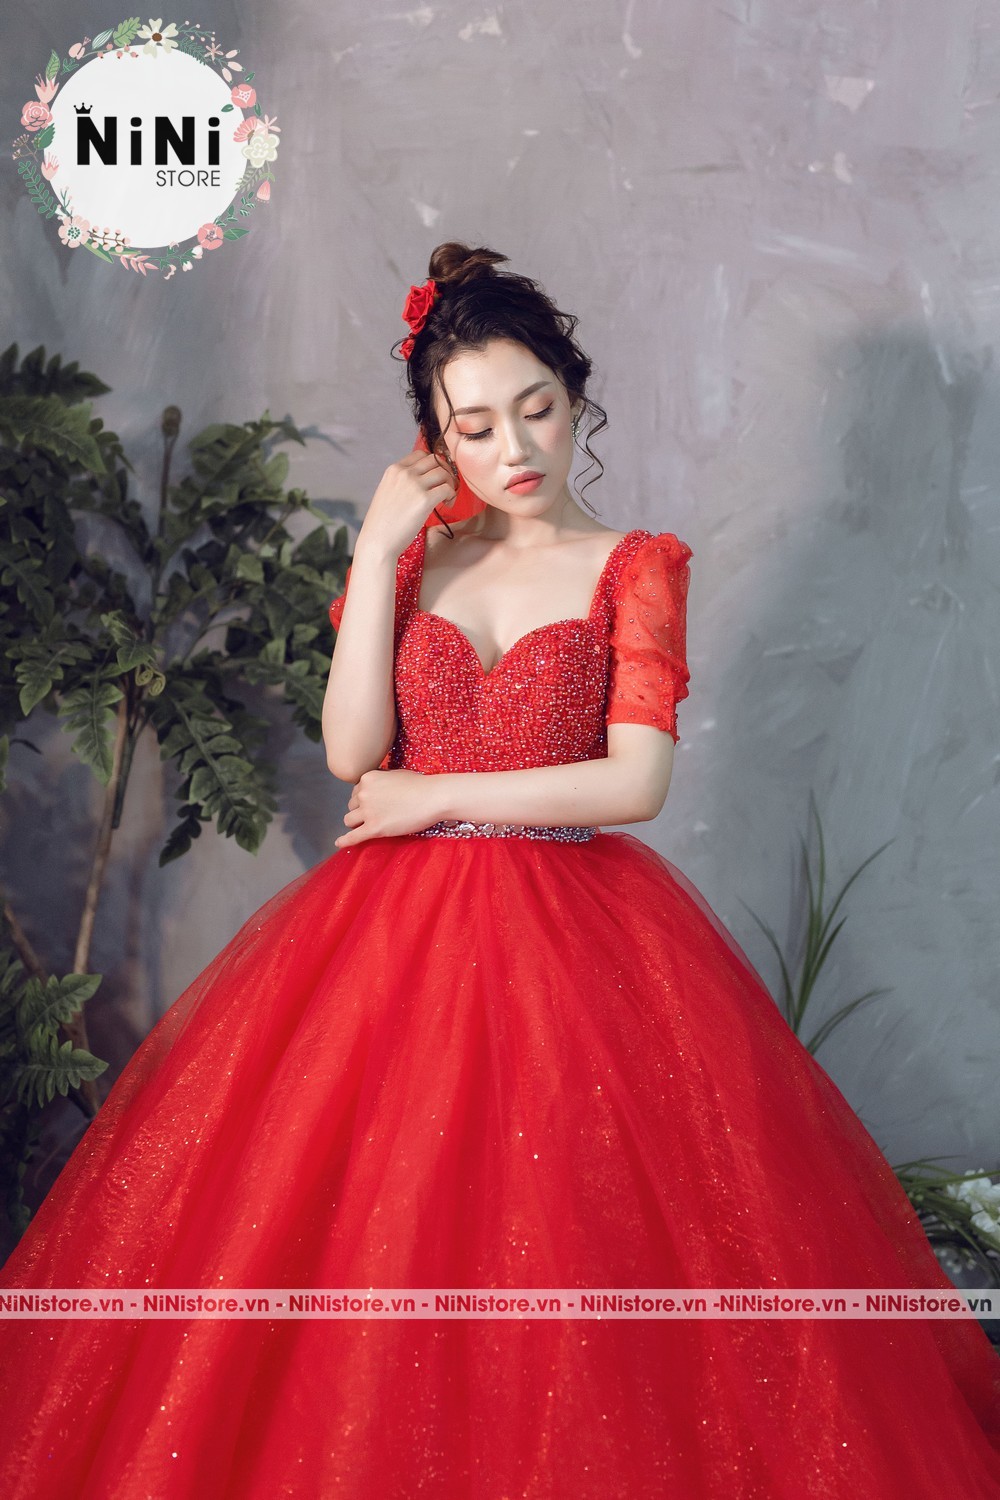 Top 10 Mẫu Váy Cưới Màu Đỏ Đẹp Xỉu Dành Cho Các Cô Dâu